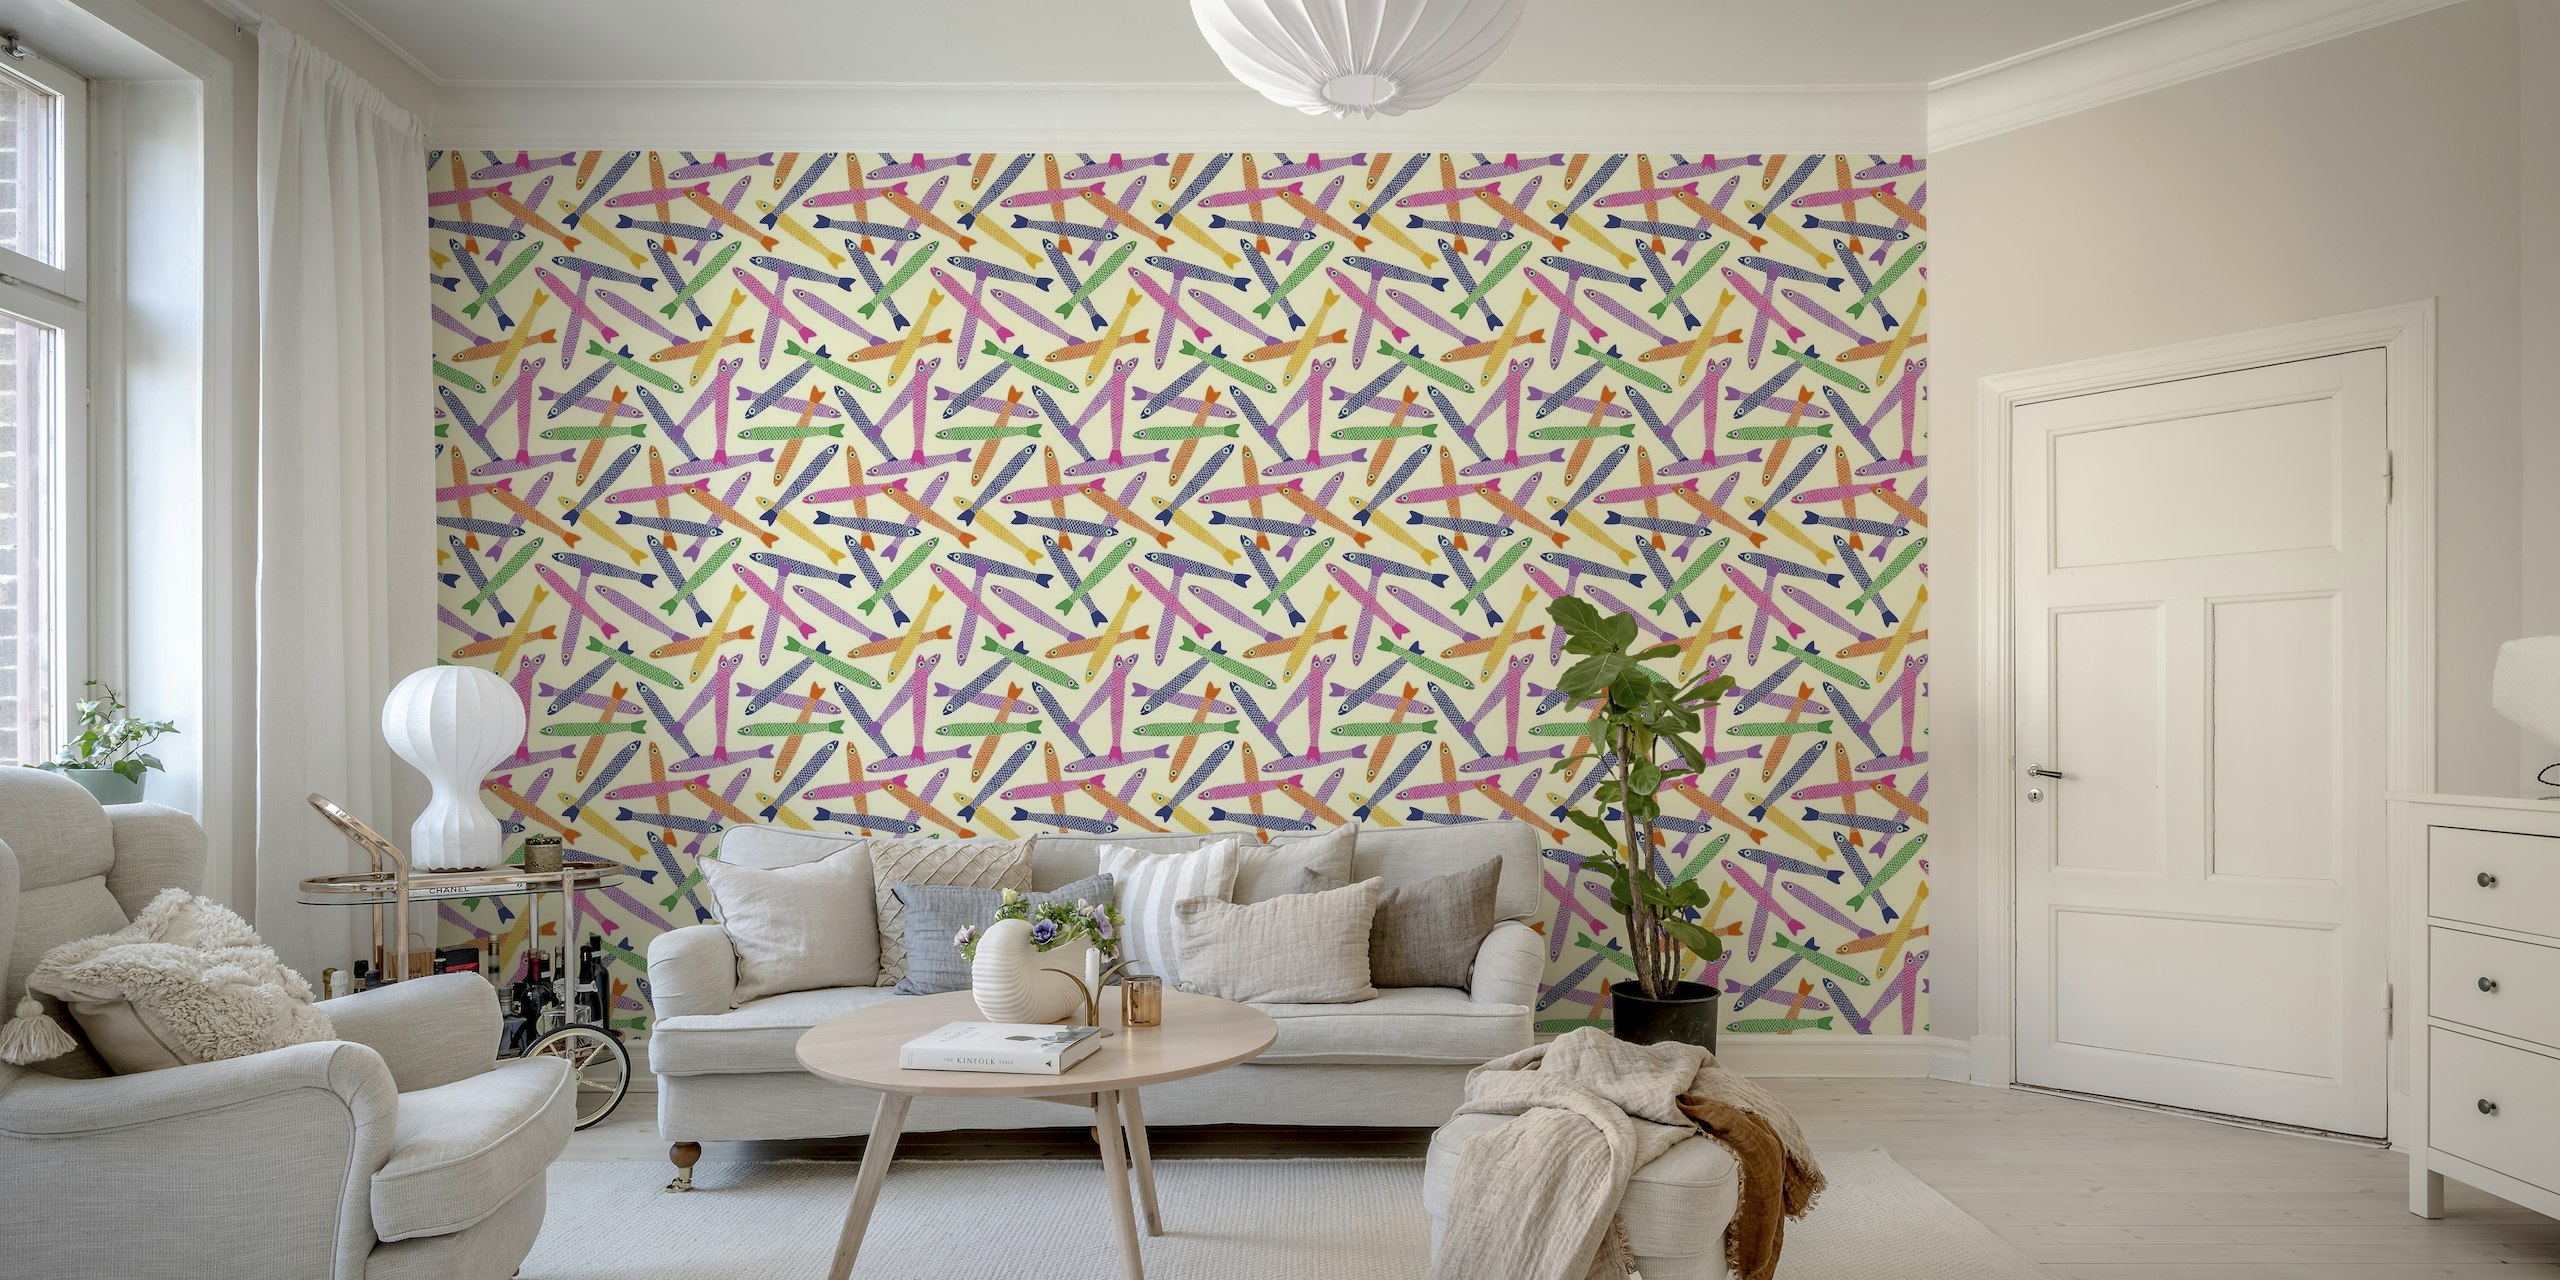 Motivi colorati di acciughe lanciate su uno sfondo murale color crema